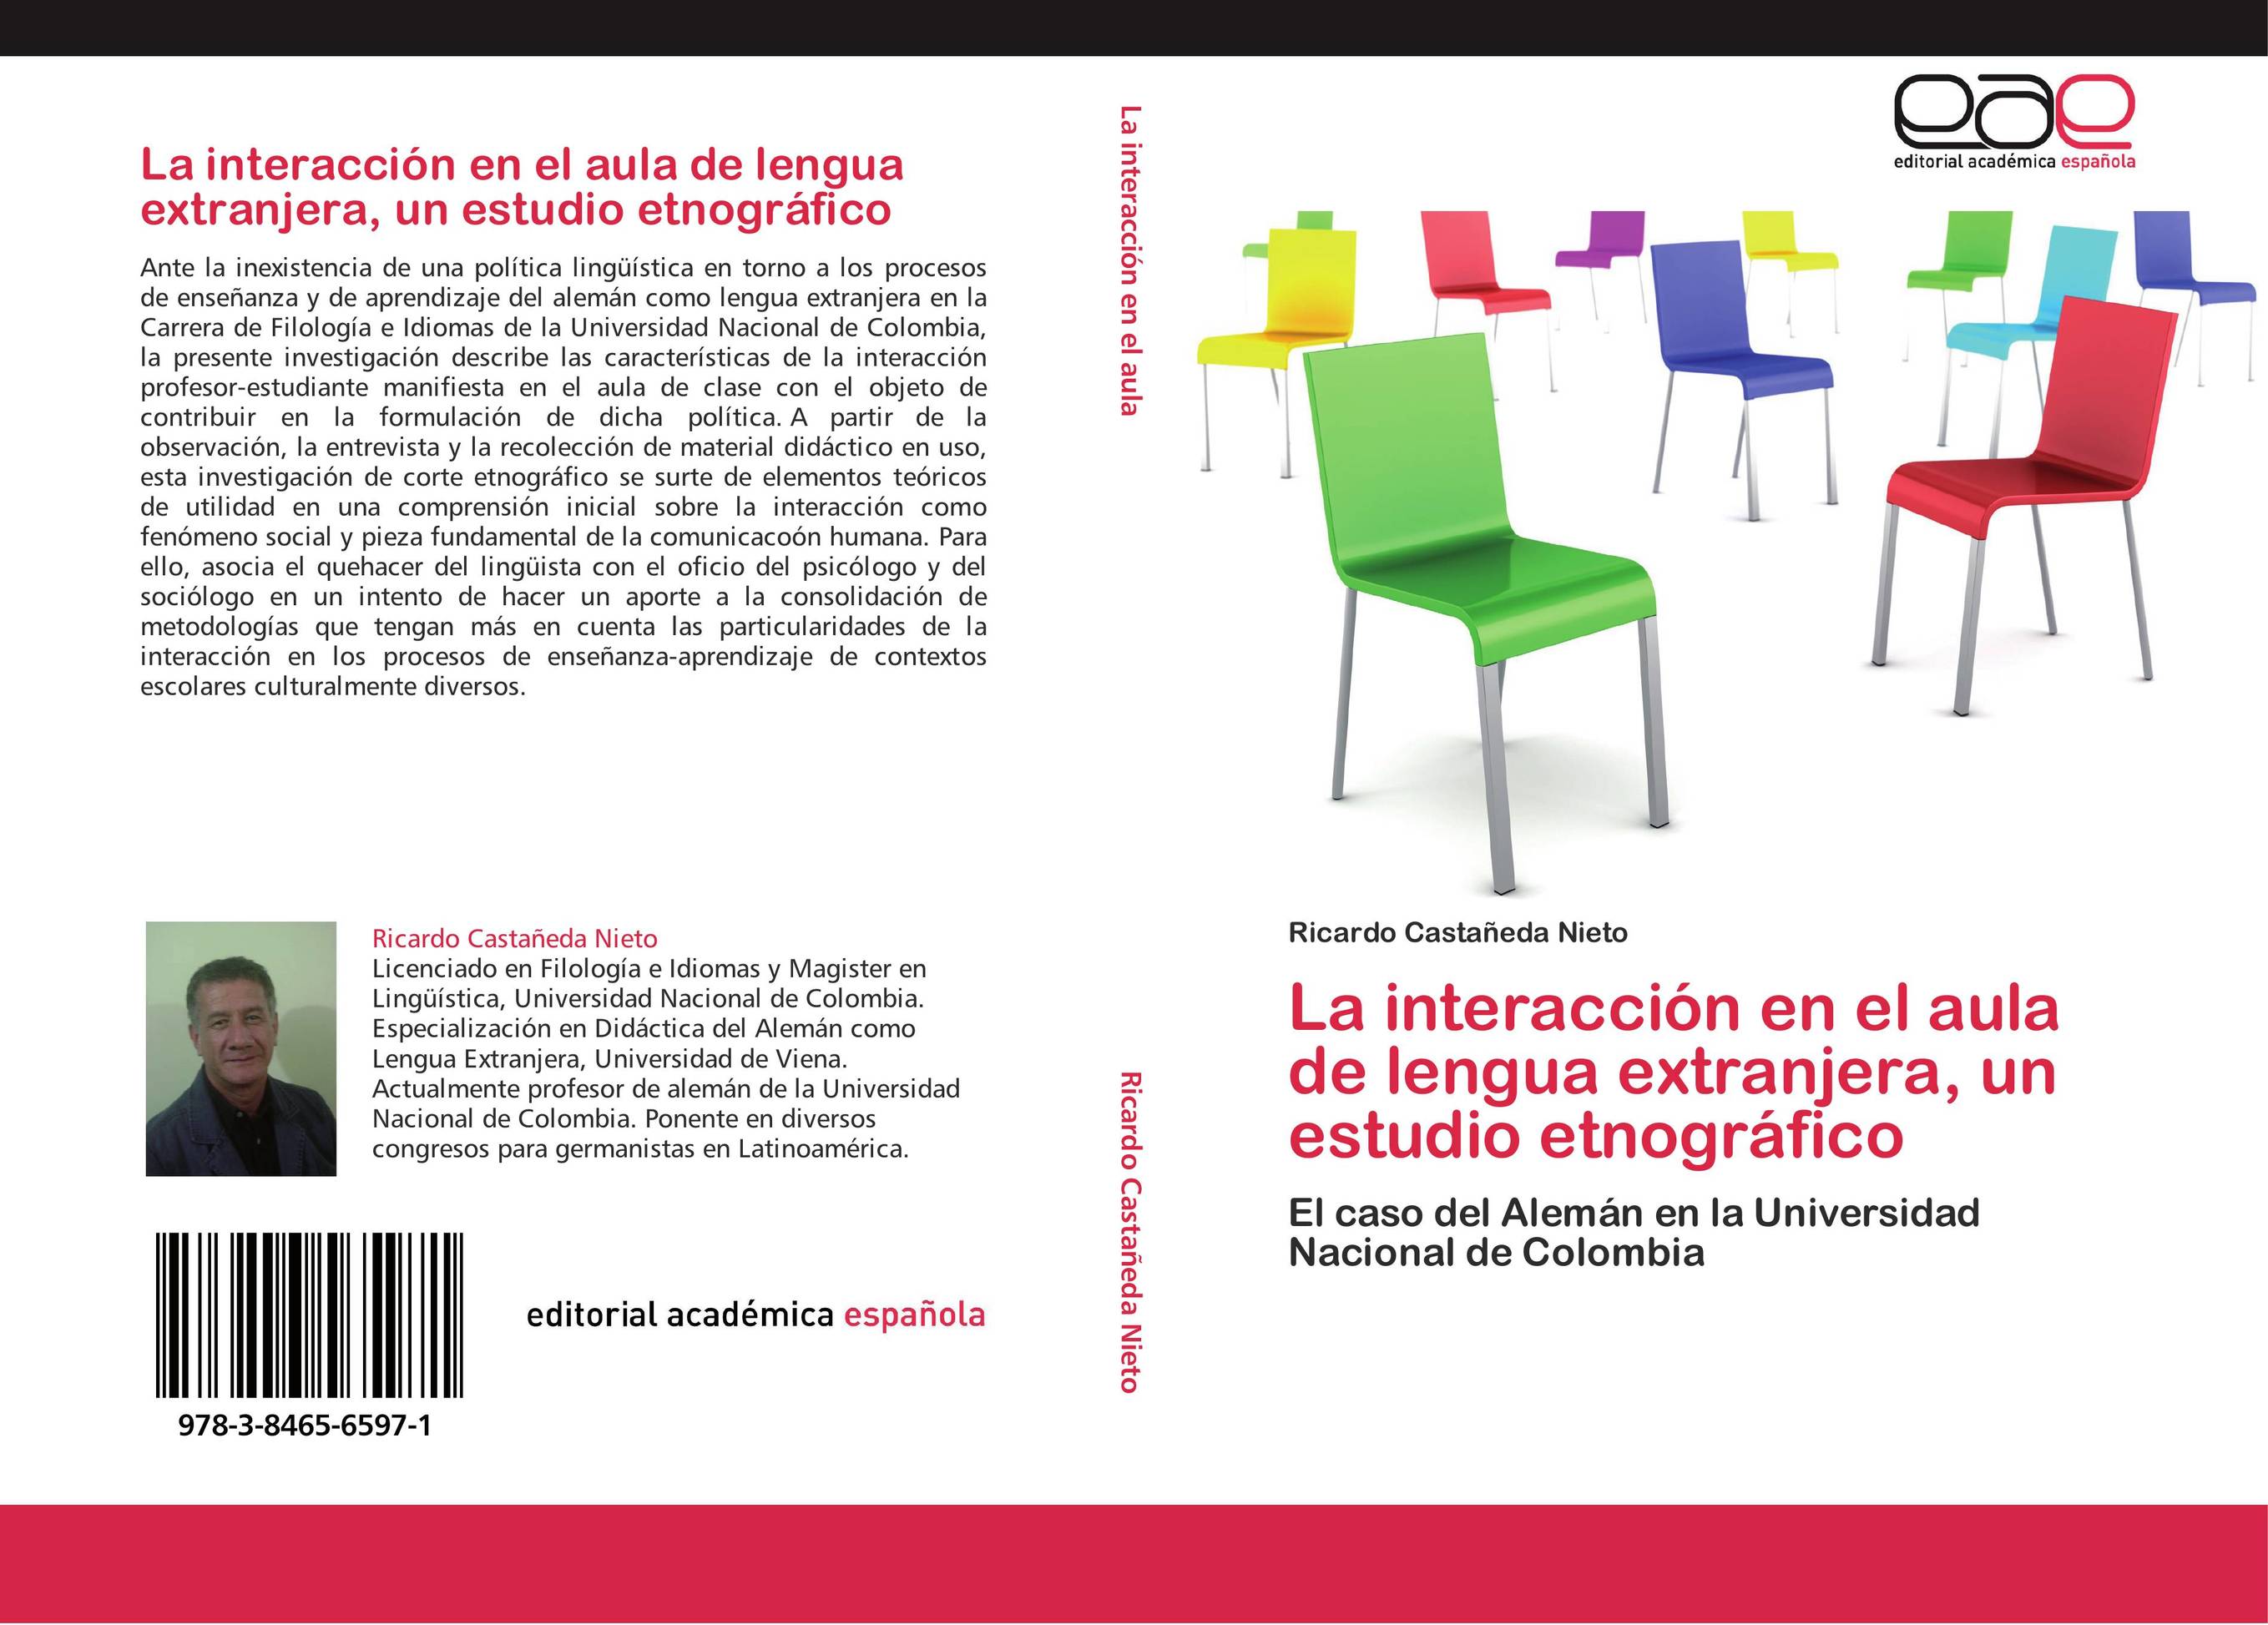 La interacción en el aula de lengua extranjera, un estudio etnográfico